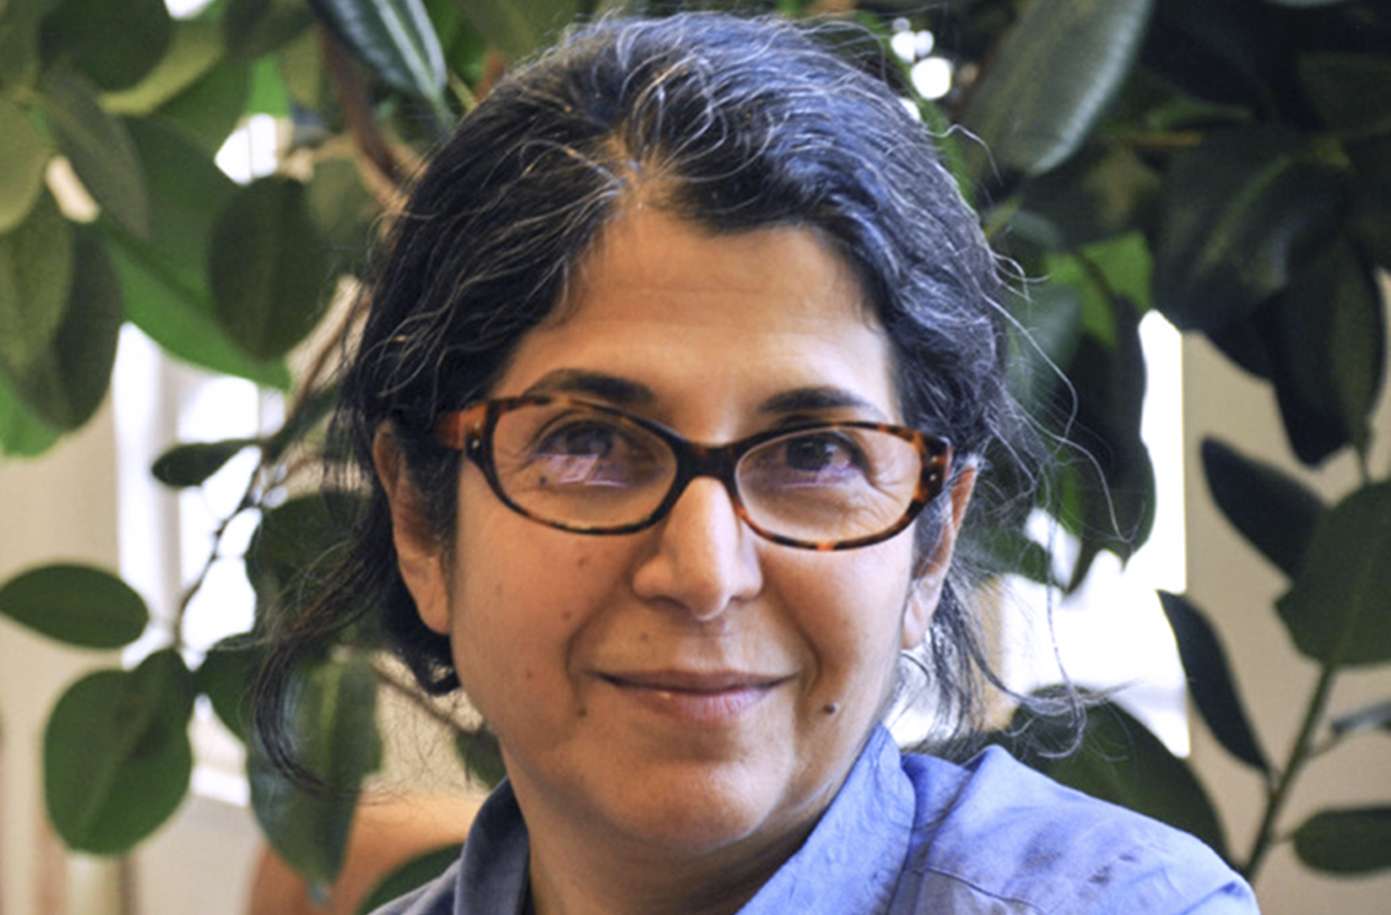 الباحثة الفرنسية المعتقلة في سجون إيران فاريبا عدلخاه